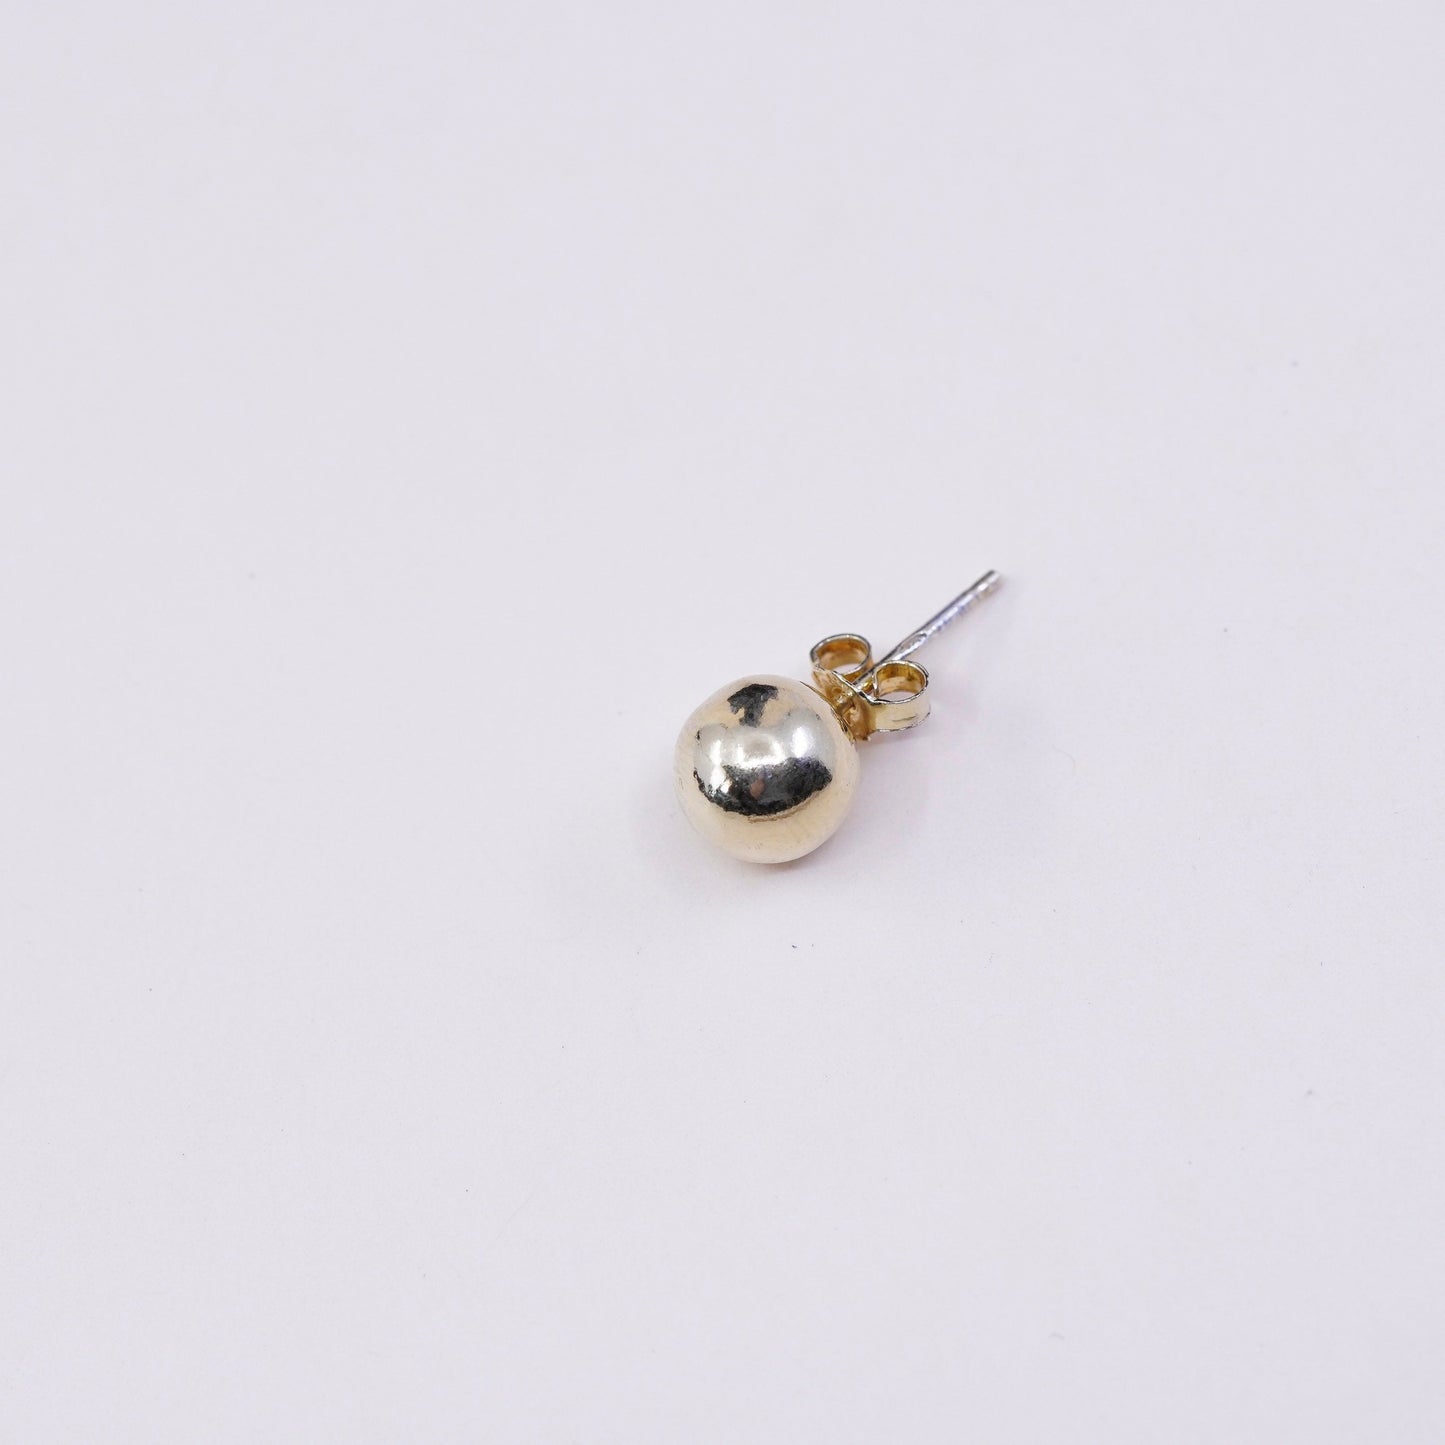 6mm, Vintage vermeil gold over sterling silver sphere studs, handmade 925 earrings, stamped 925